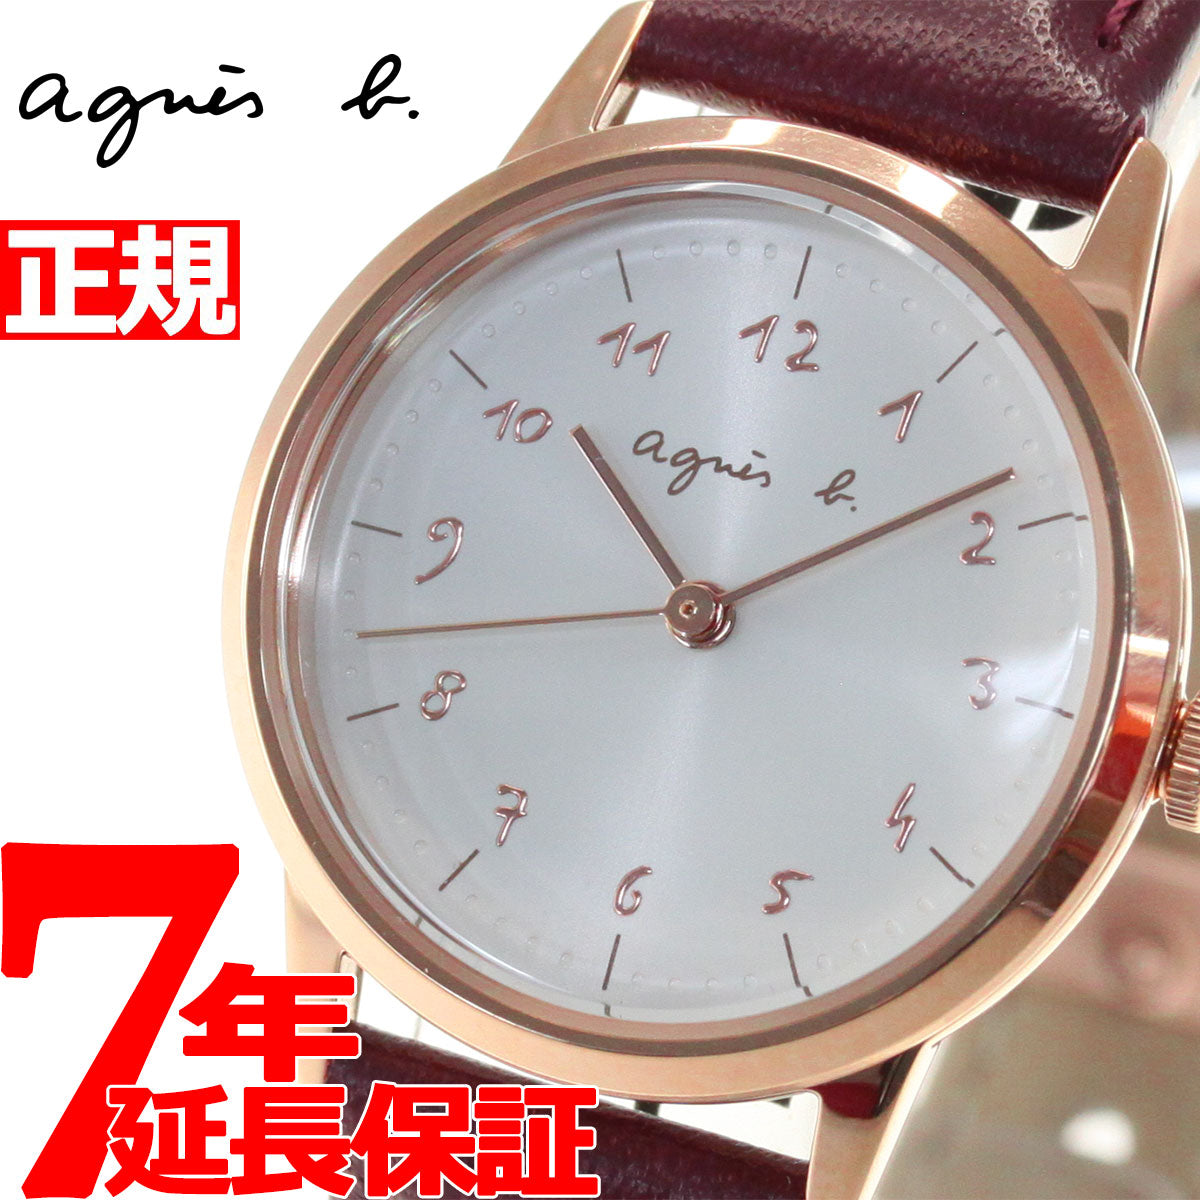 アニエスベー 時計 レディース 腕時計 agnes b. マルチェロ Marcello FBSK941